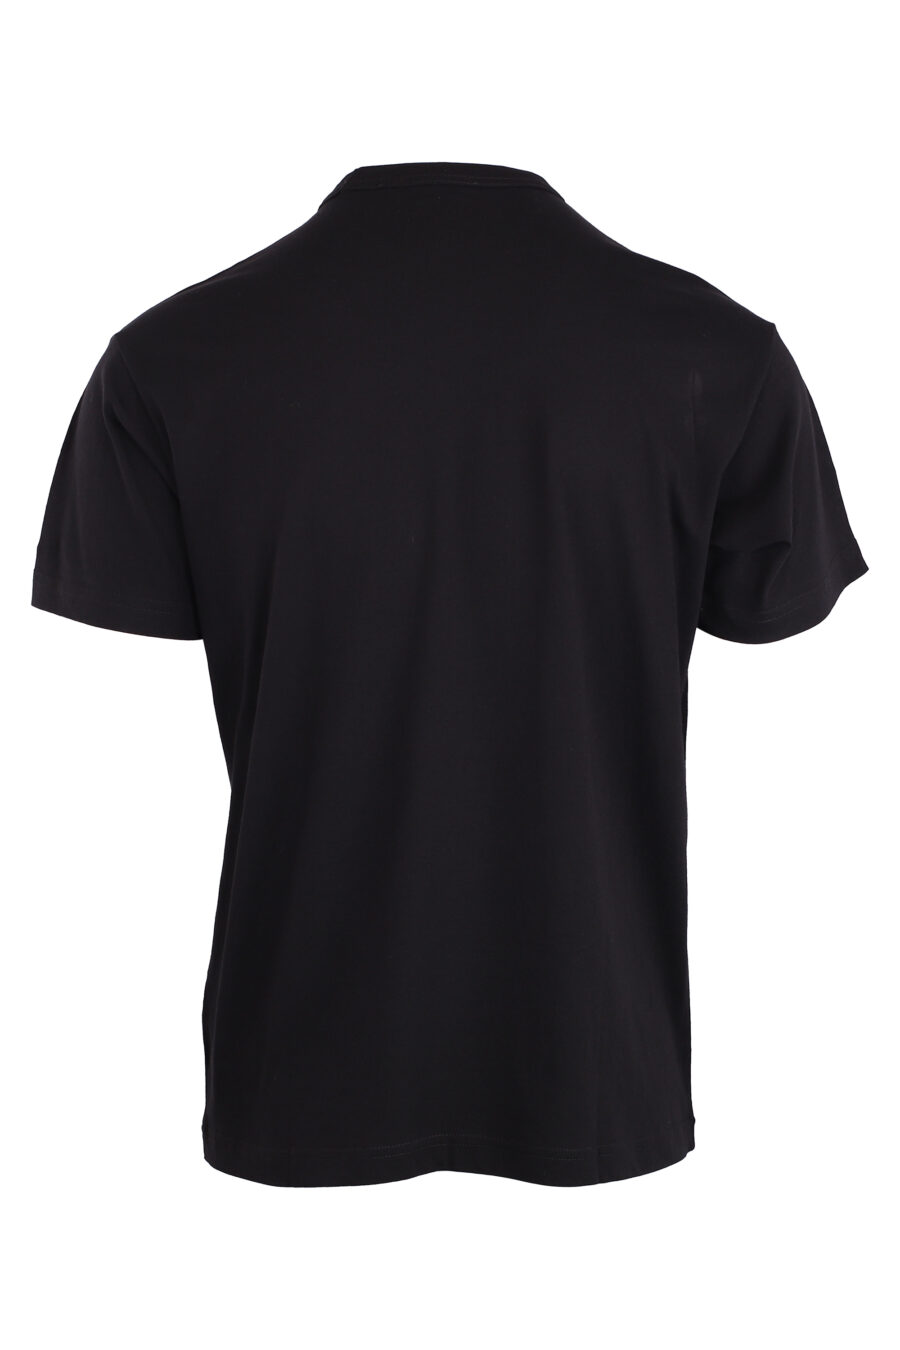 T-shirt preta com logótipo em chapa dourada - IMG 8946